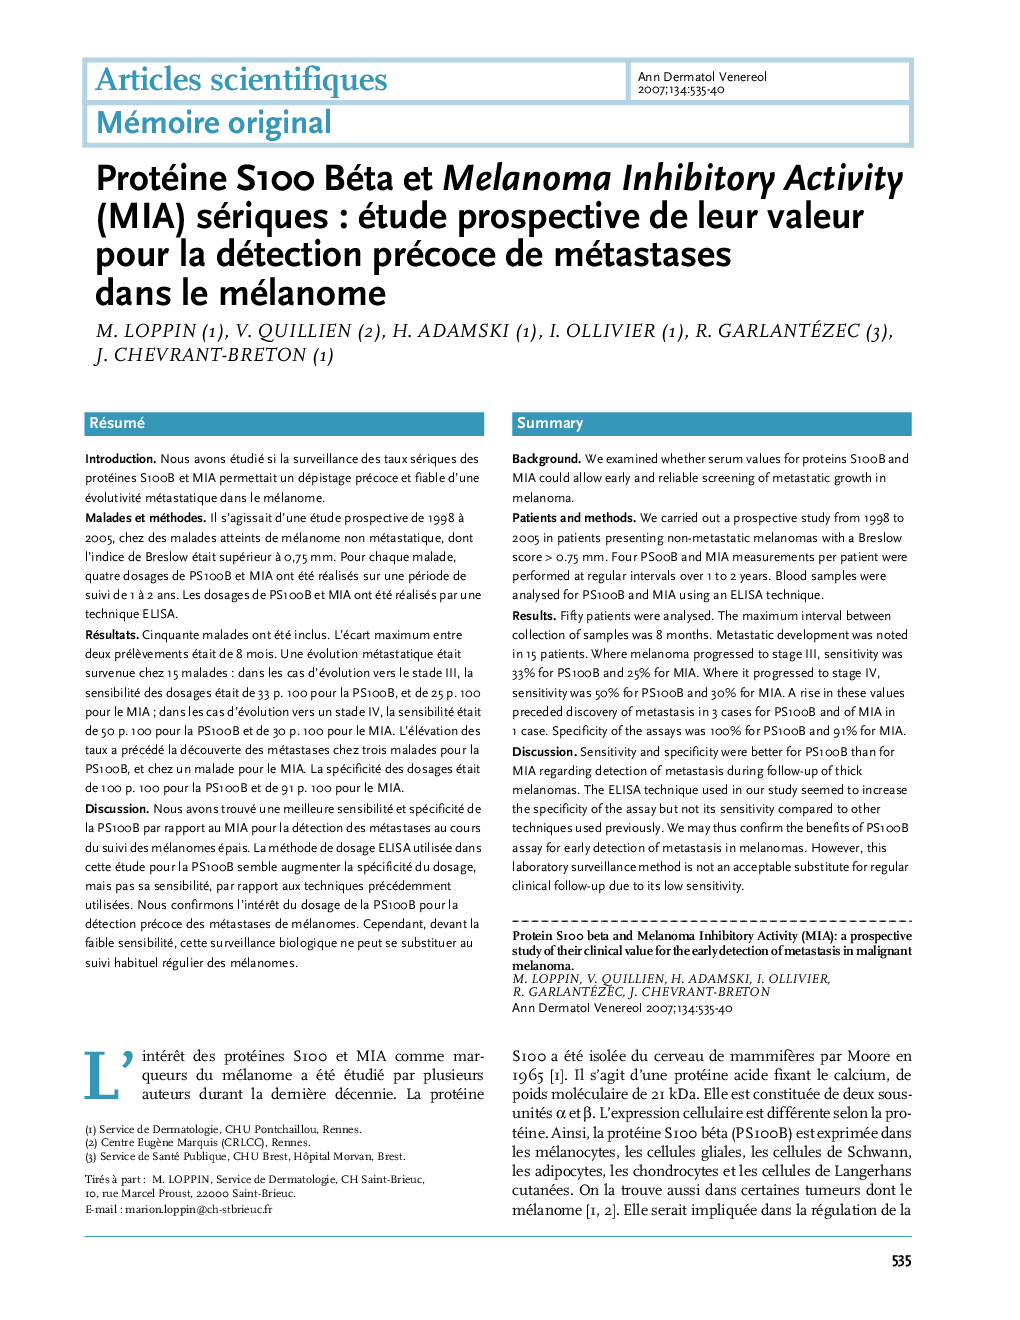 Protéine S100 Béta et Melanoma Inhibitory Activity (MIA) sériques : étude prospective de leur valeur pour la détection précoce de métastases dans le mélanome